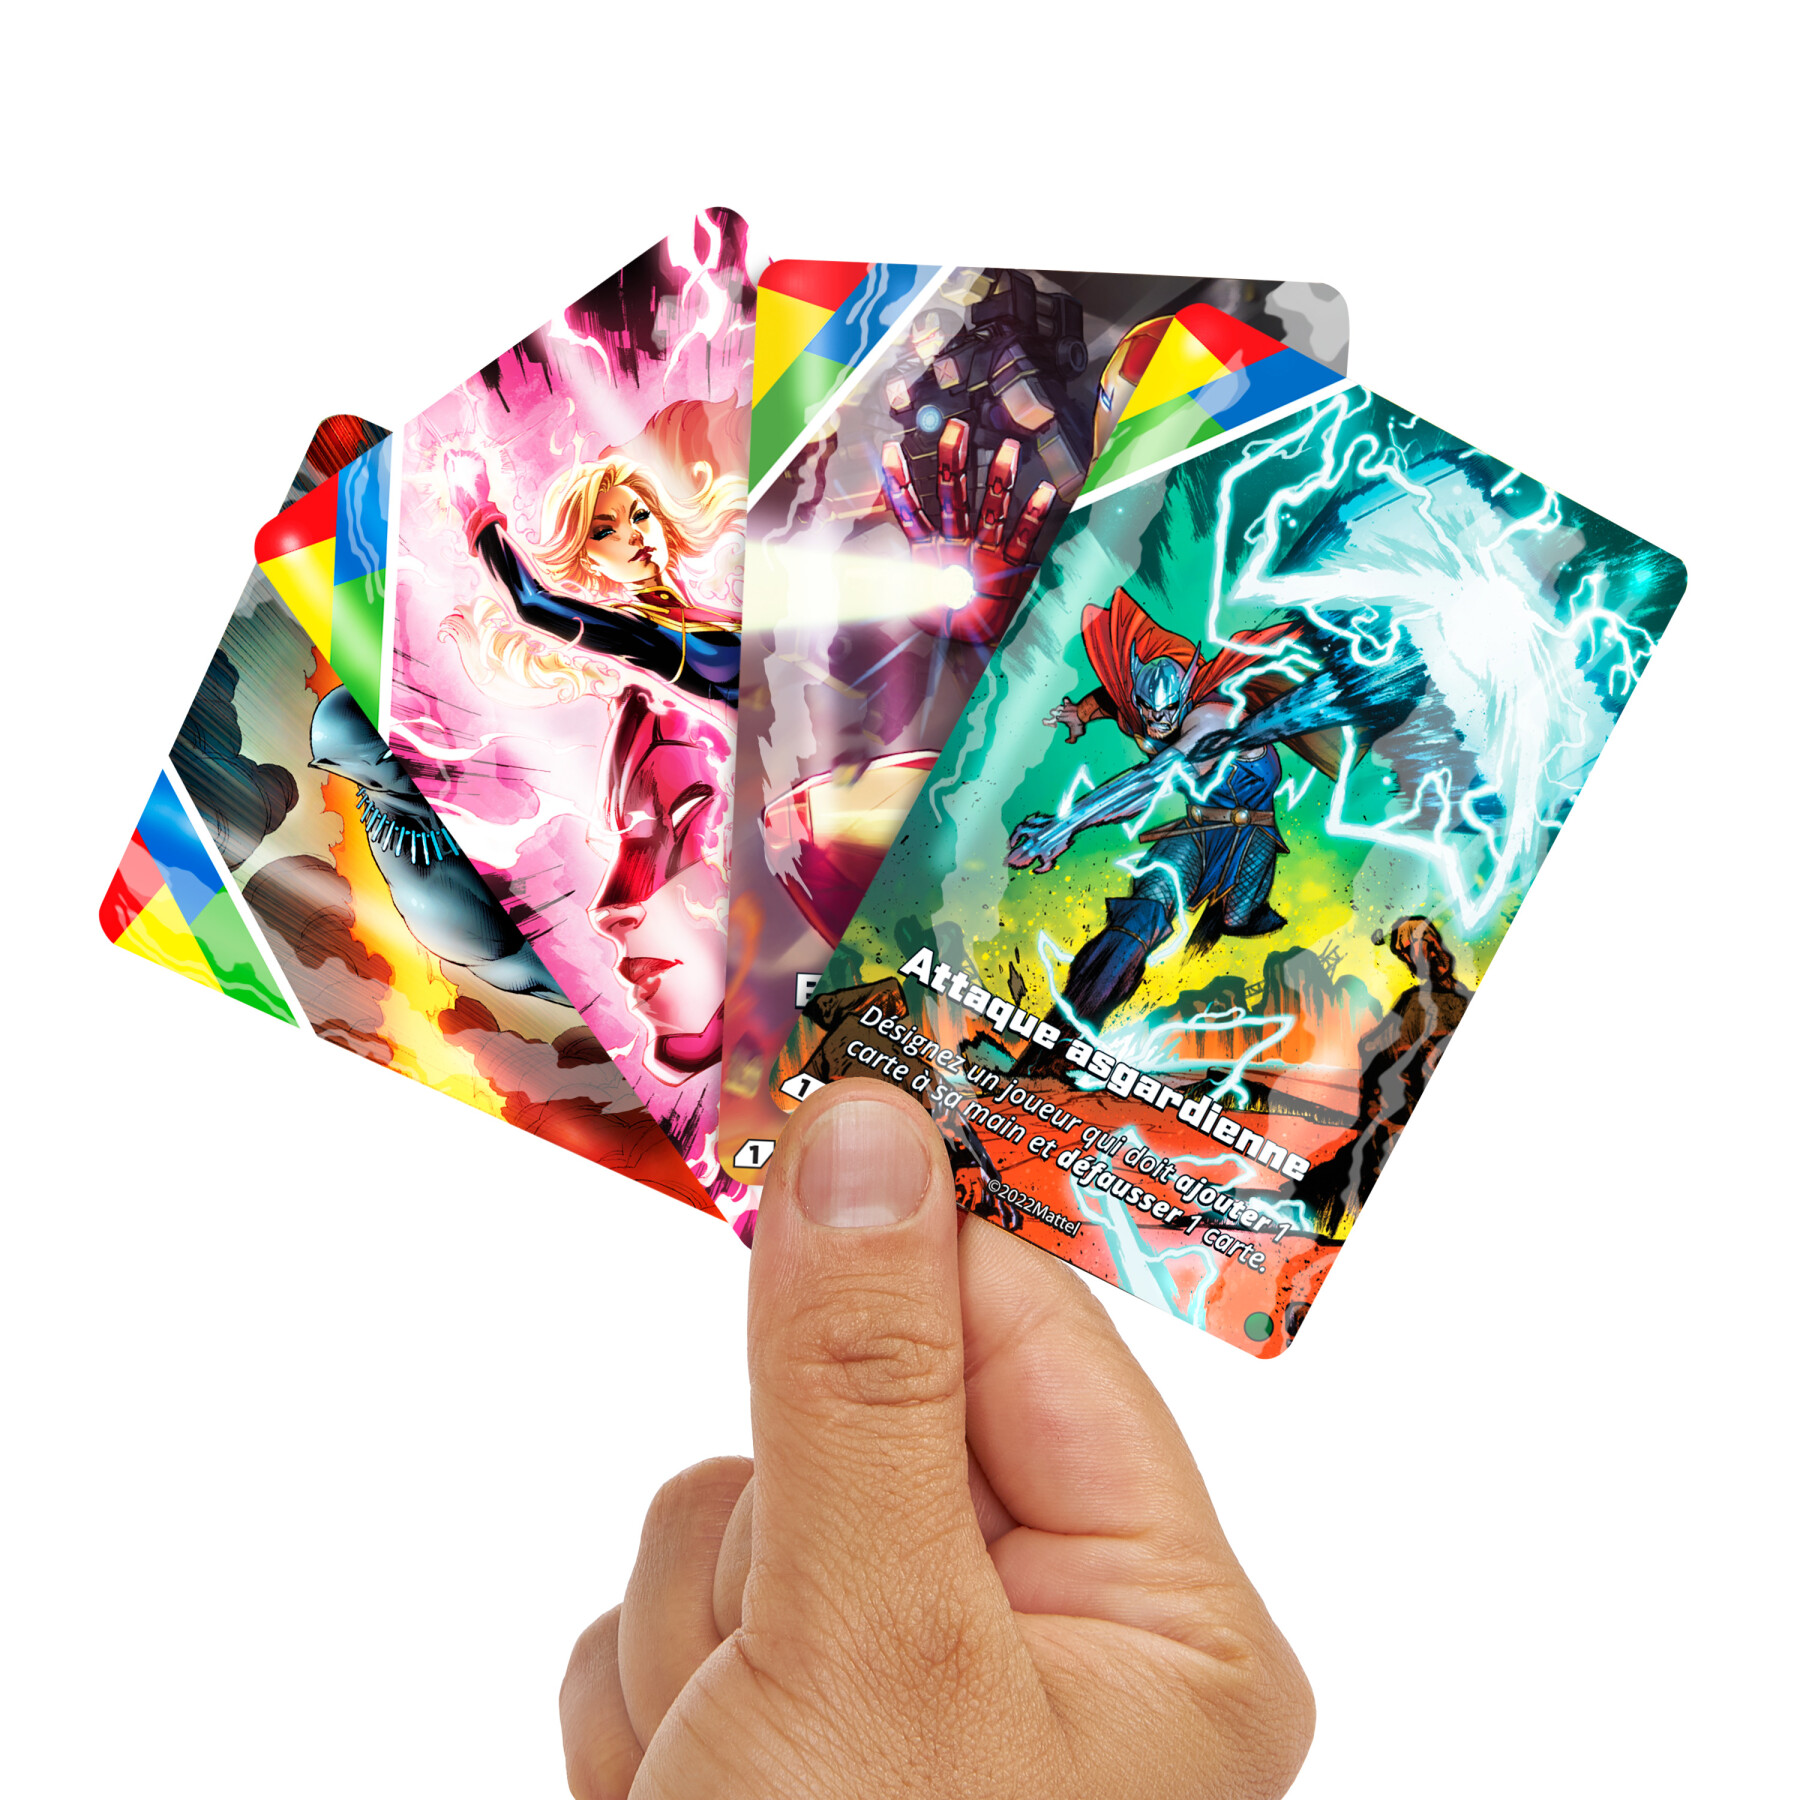 Uno ultimate, l'iconico gioco di carte con i supereroi marvel - MATTEL GAMES, UNO